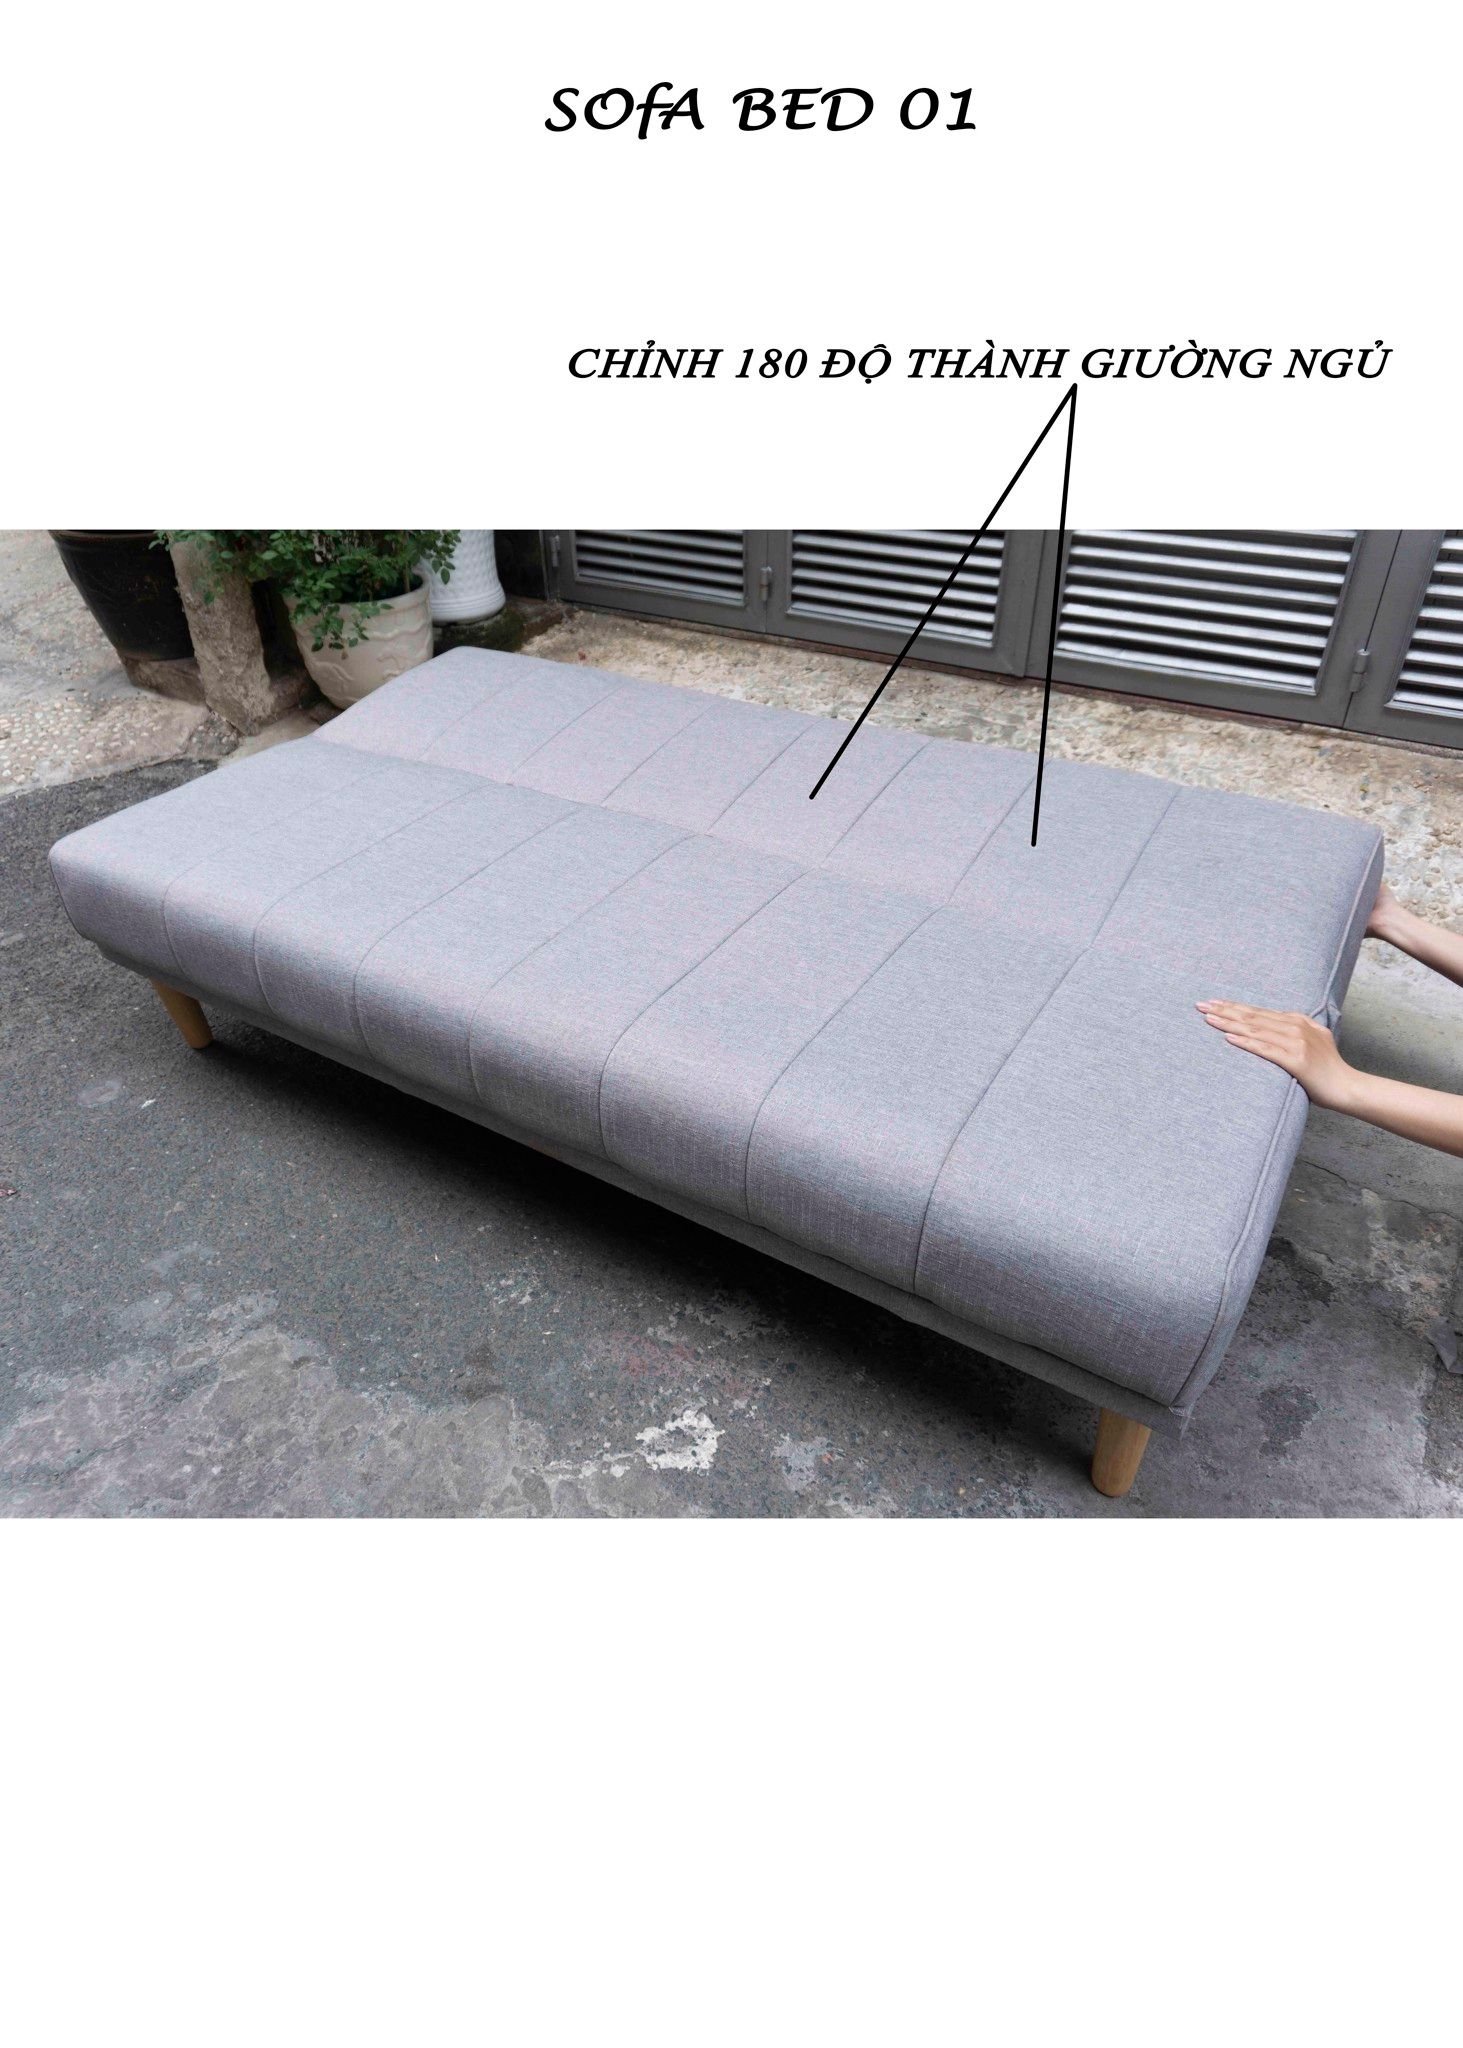  Sofa bed 3 chức năng chân gỗ version 3 